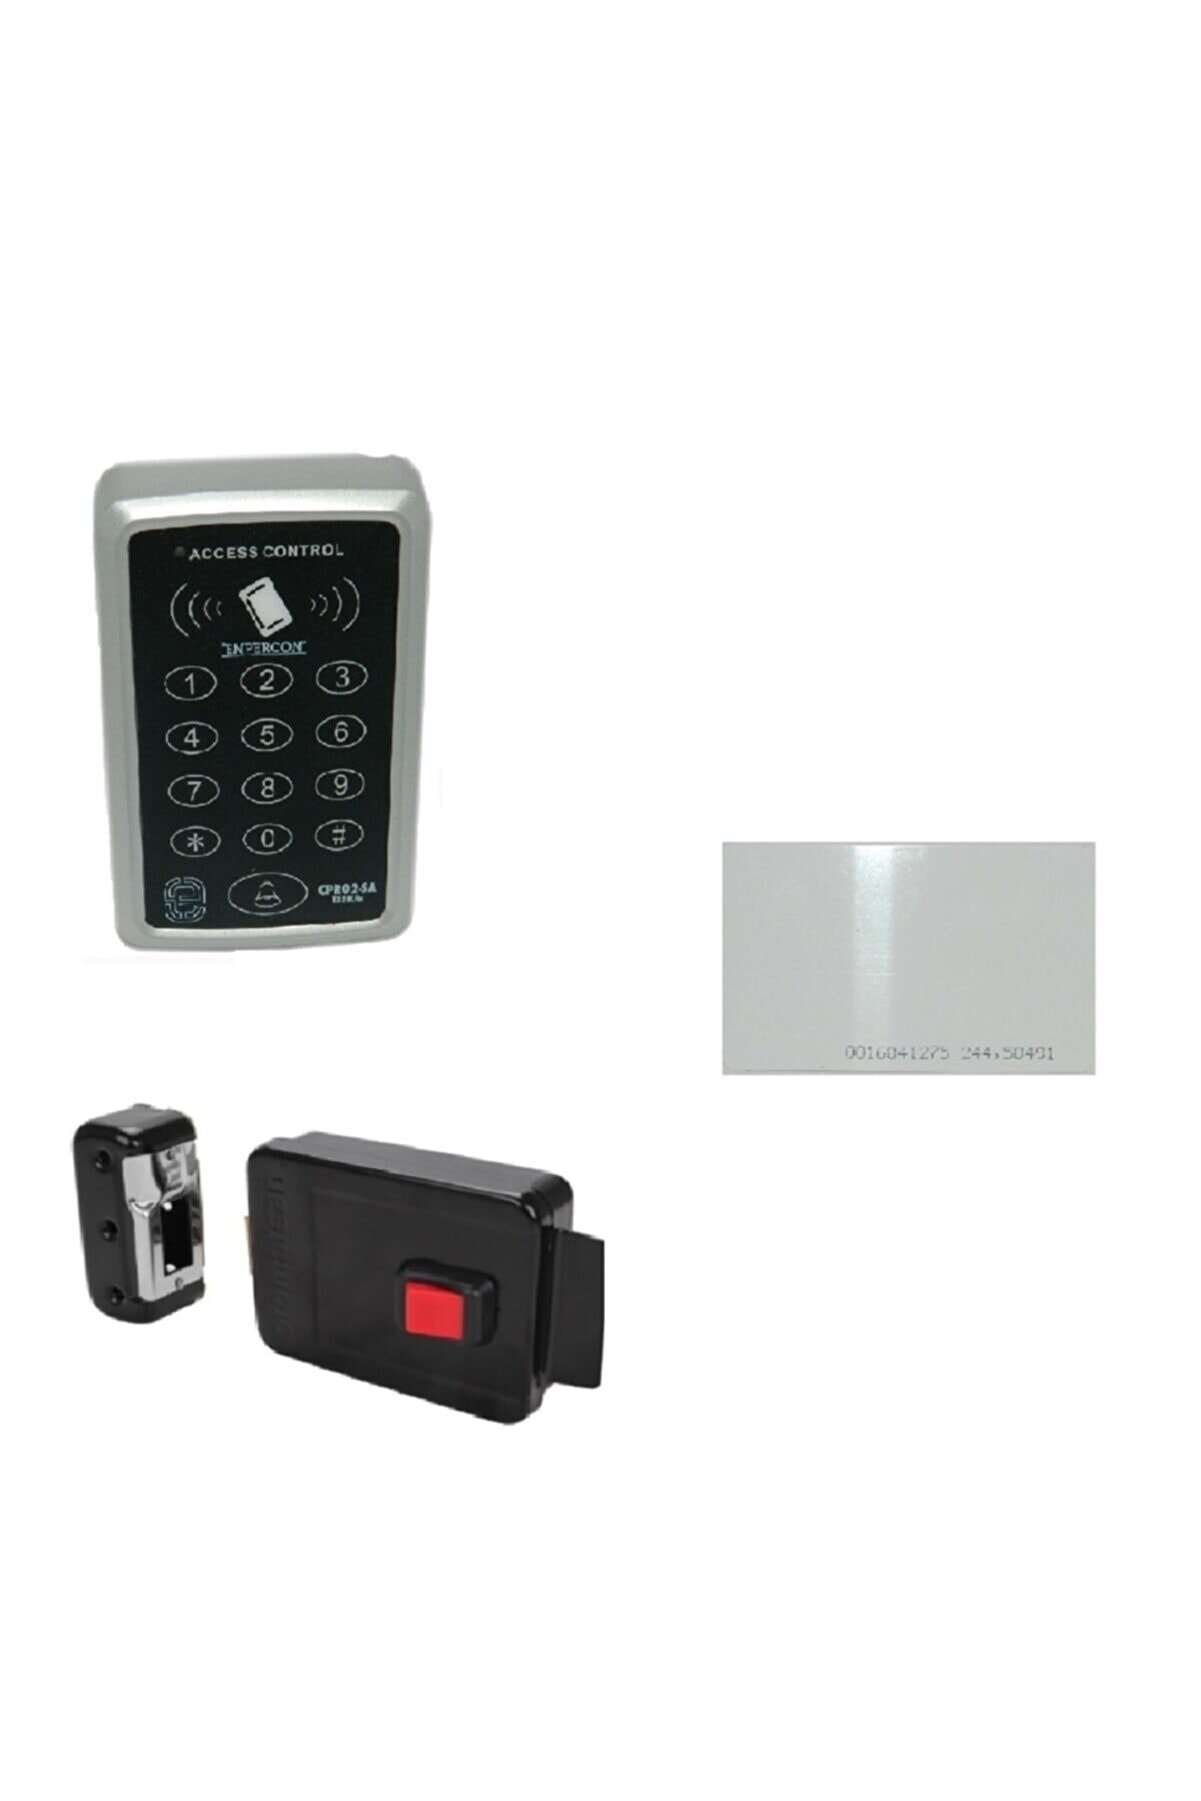 ENPERCON Elektronik Kapı Otomatı Ve Rfid Kartlı-şifreli Geçiş Sistemi Set 10 Adet Kart